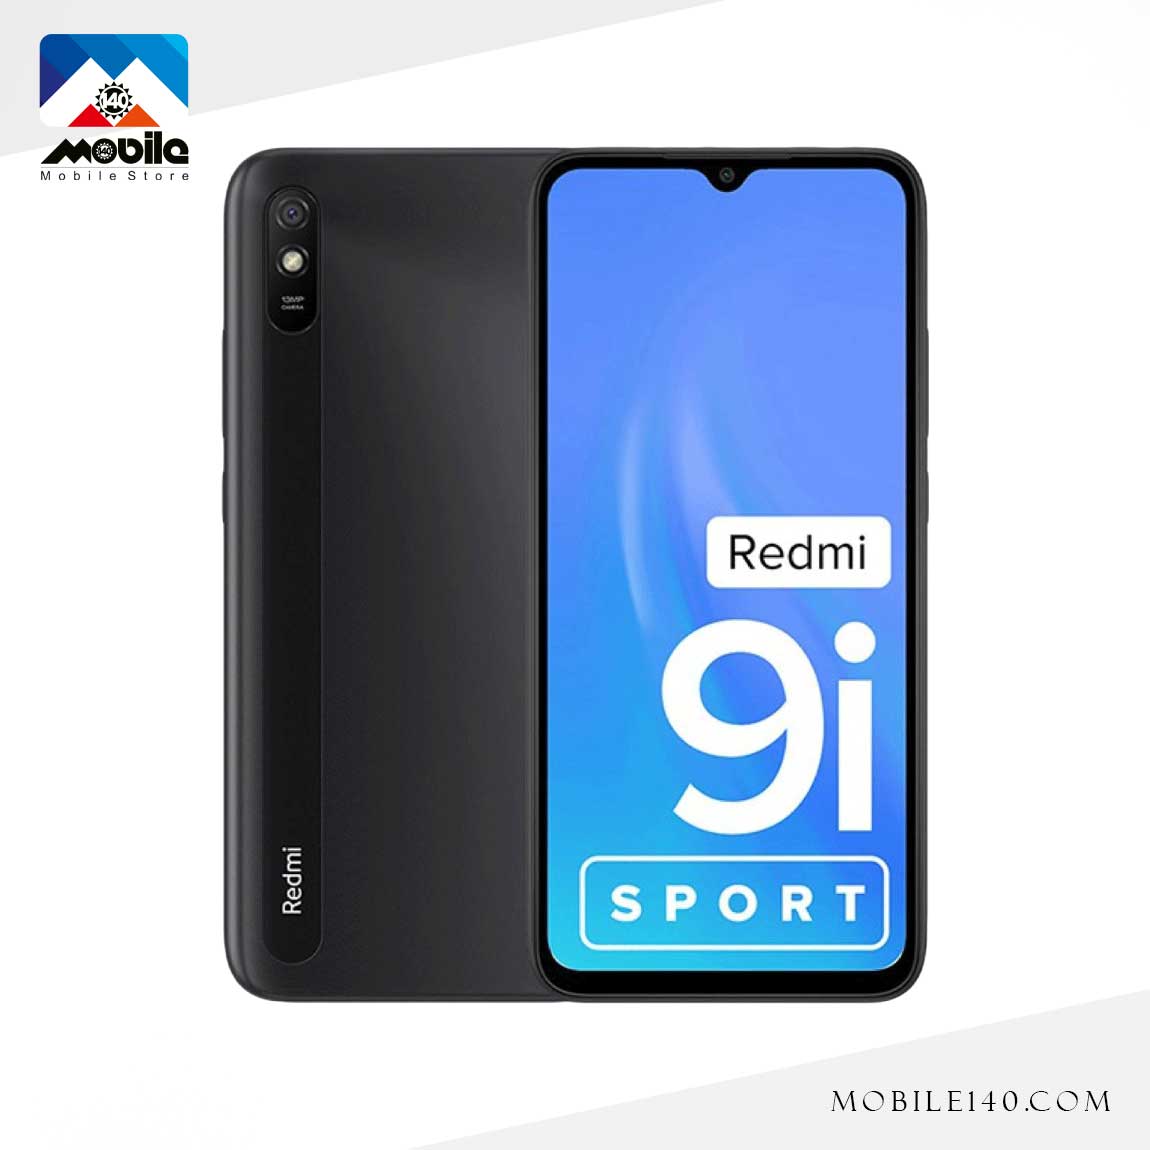 گوشی موبایل شیائومی مدل Redmi 9i Sport  1